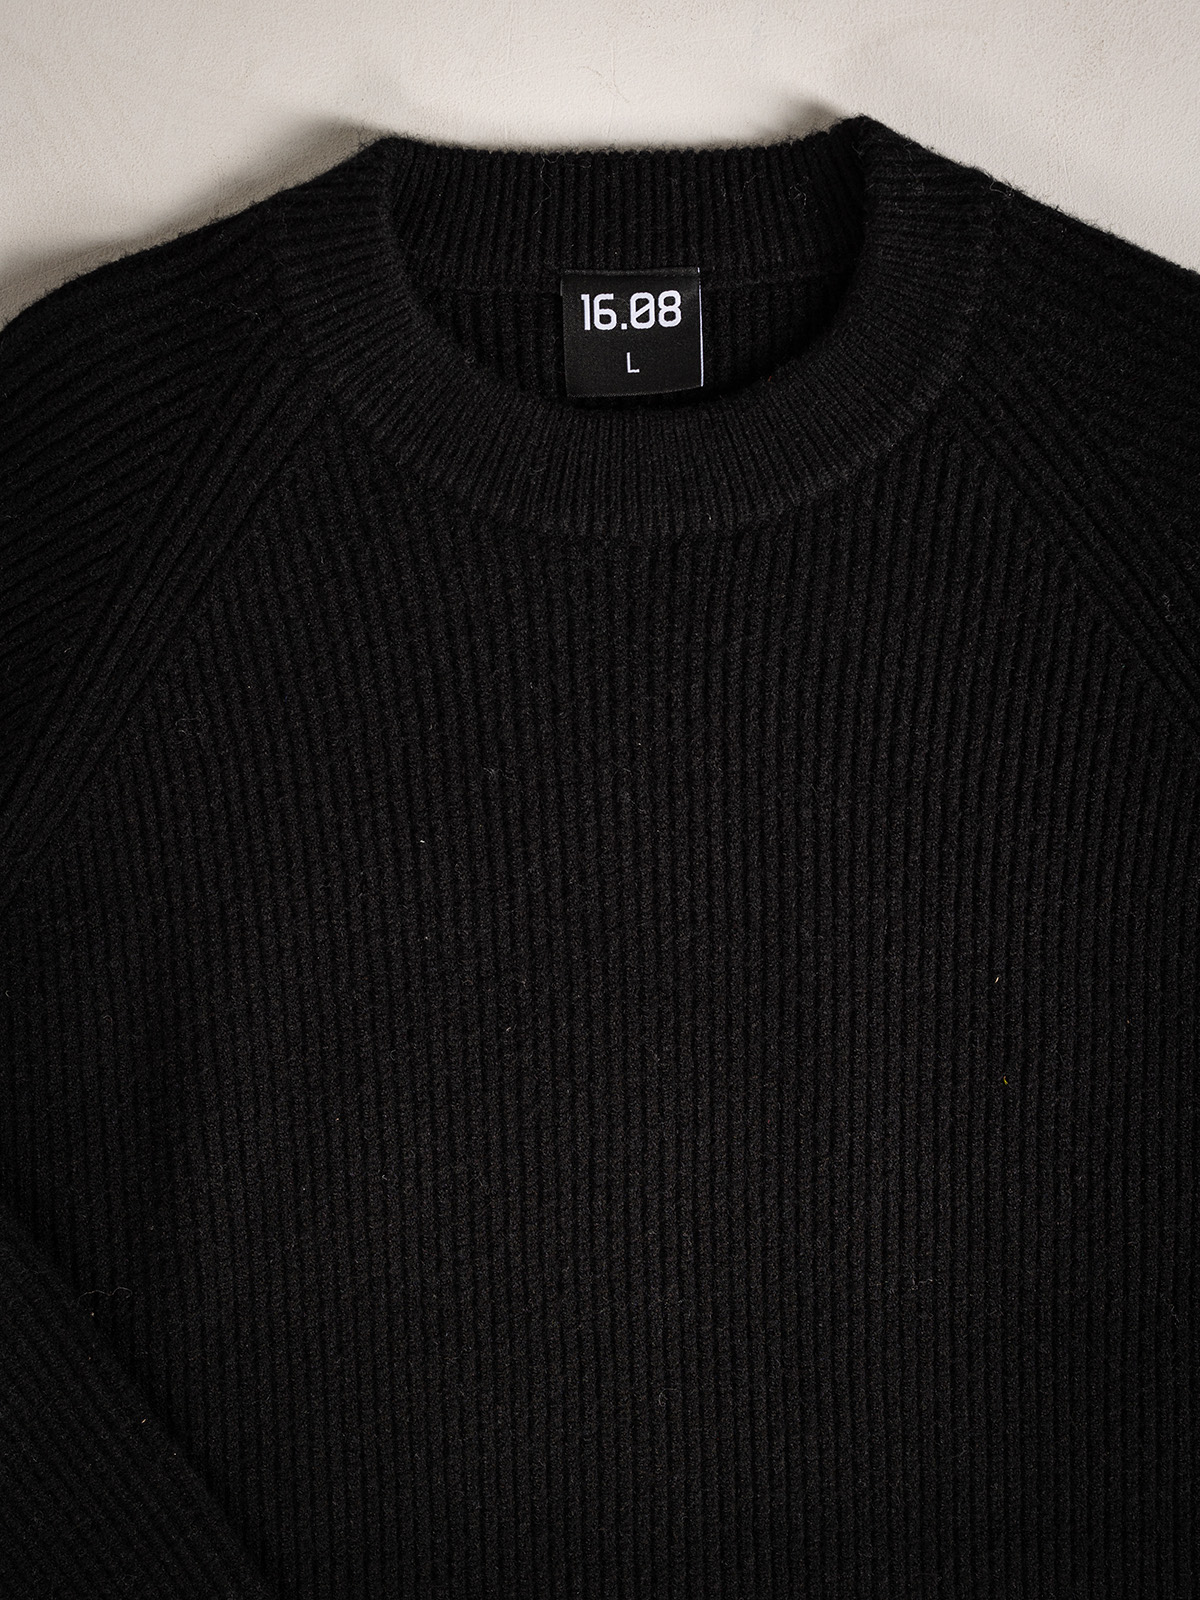 Black Oversized Sweater 1608 WEAR